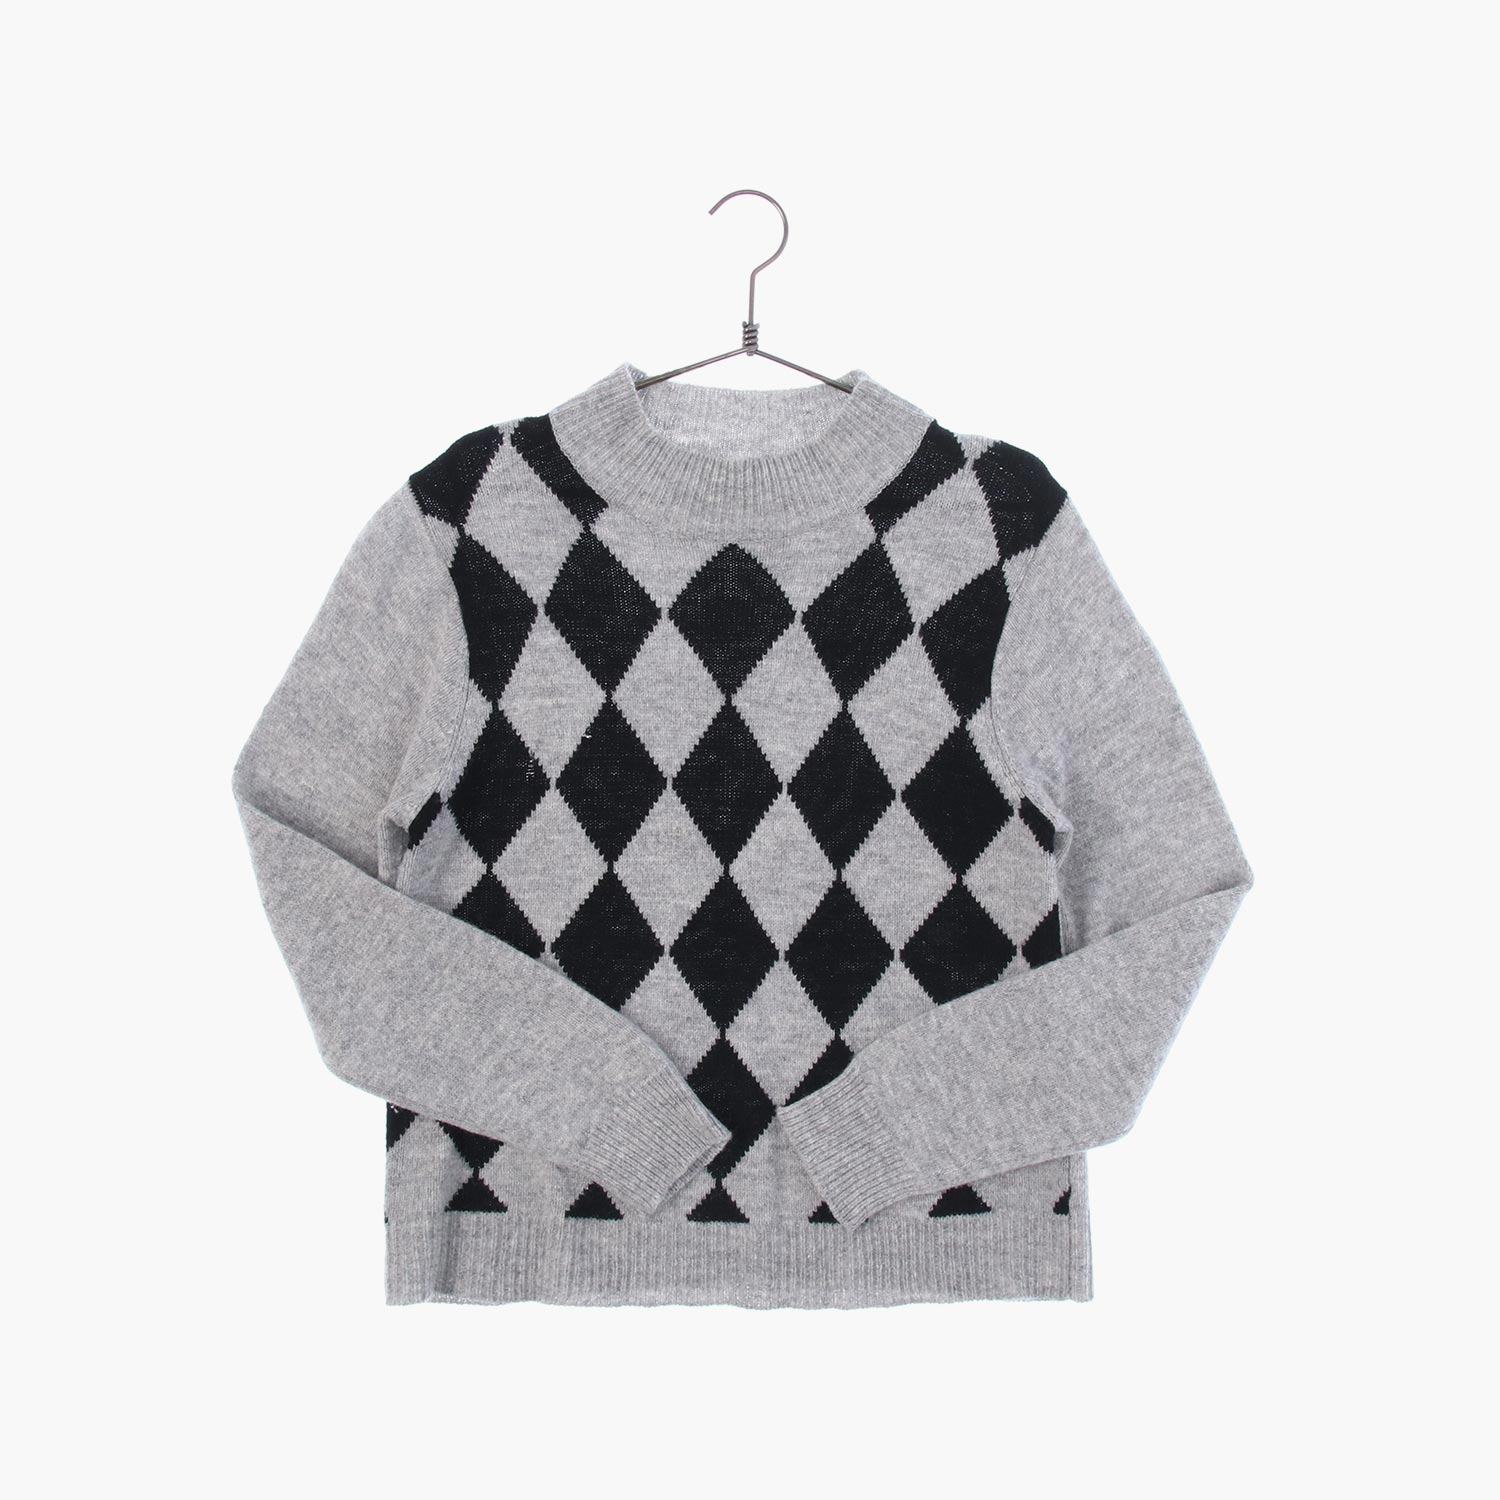 울 라운드 패턴 니트/스웨터 공용 FREE 빈티지톡